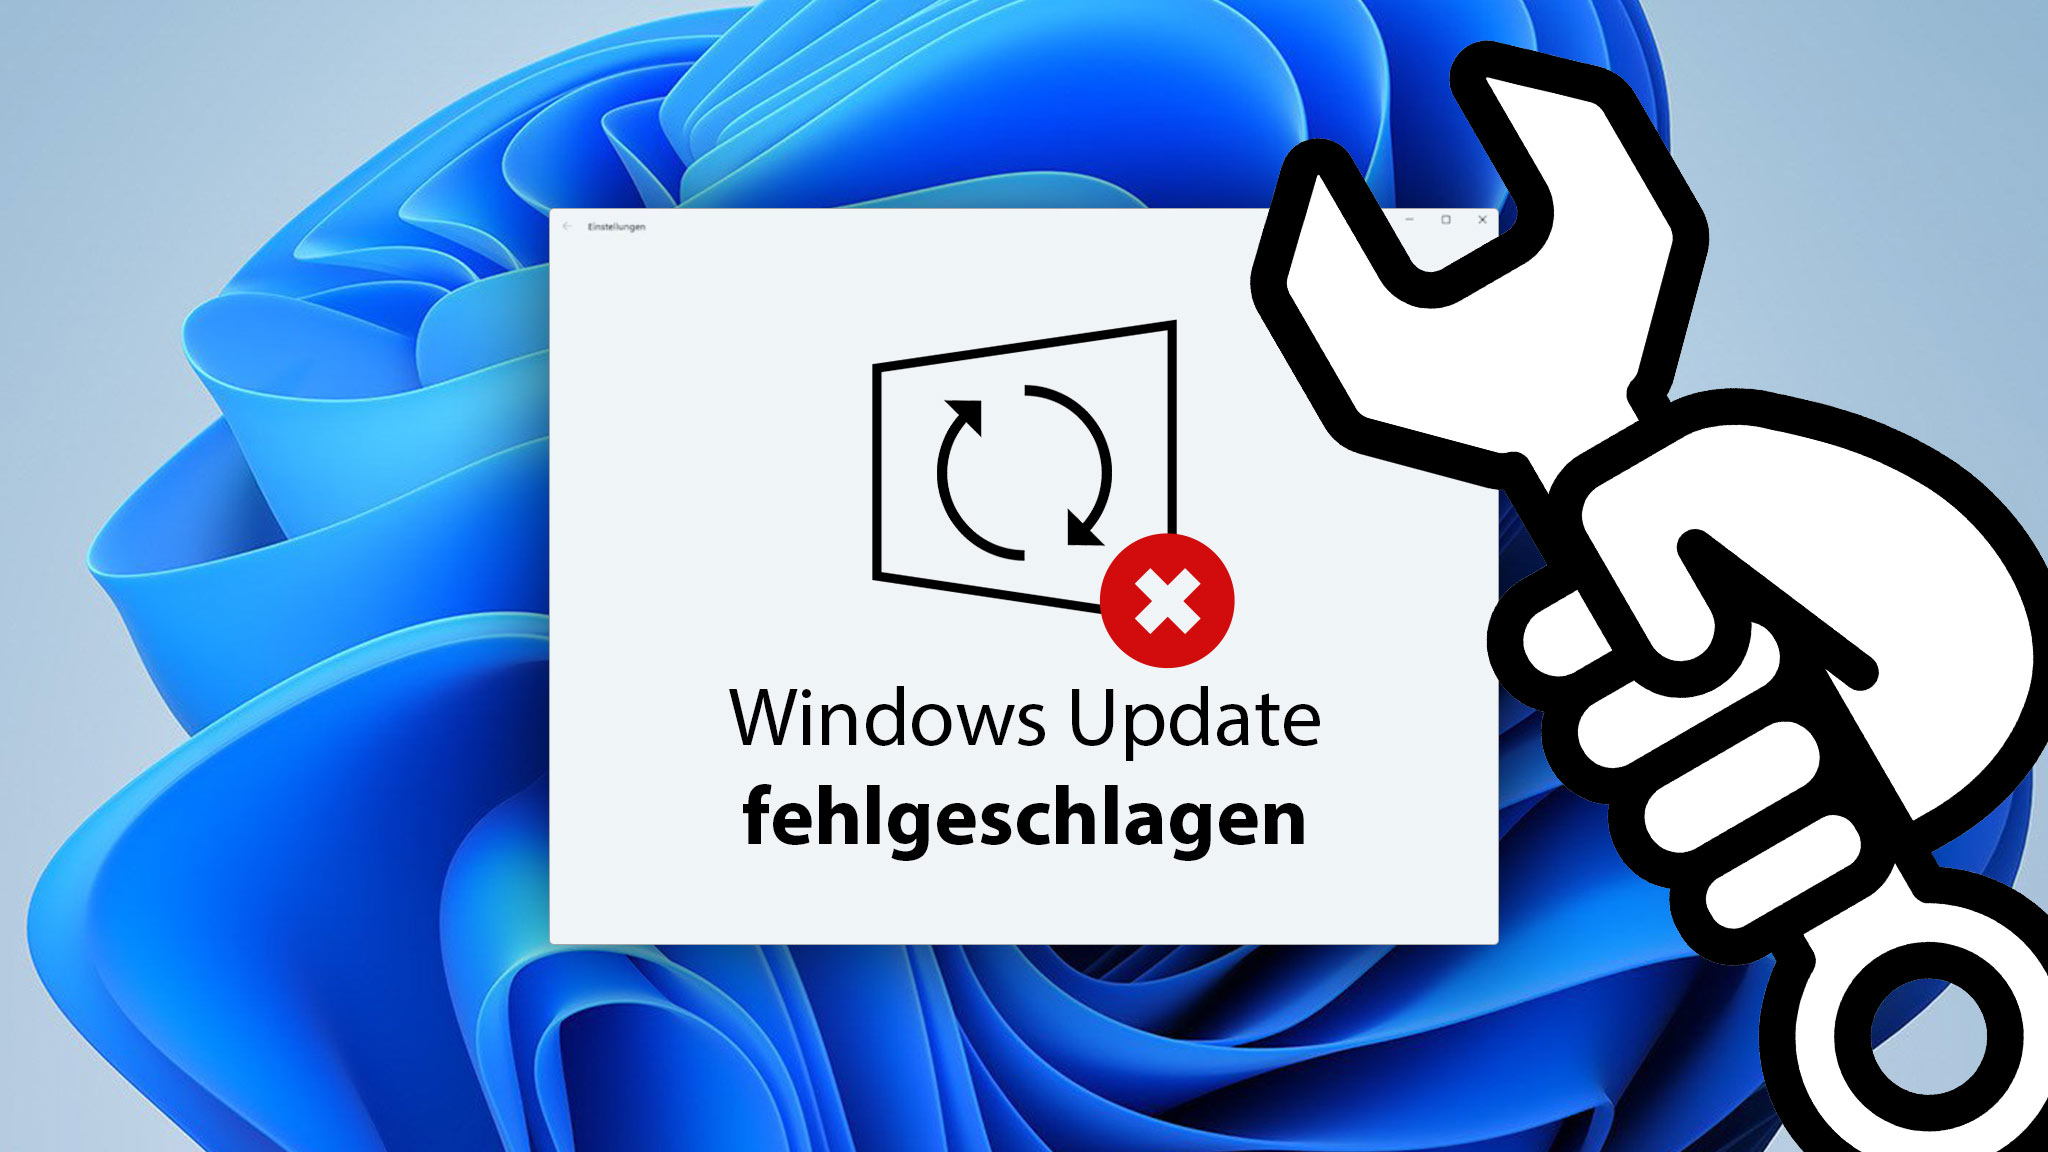 Aktualisieren Sie Windows regelmäßig: Installieren Sie die neuesten Updates von Microsoft, um Fehler zu beheben und die Leistung zu optimieren.
Führen Sie eine Festplattenüberprüfung durch: Überprüfen Sie Ihre Festplatte auf Fehler und reparieren Sie diese gegebenenfalls.